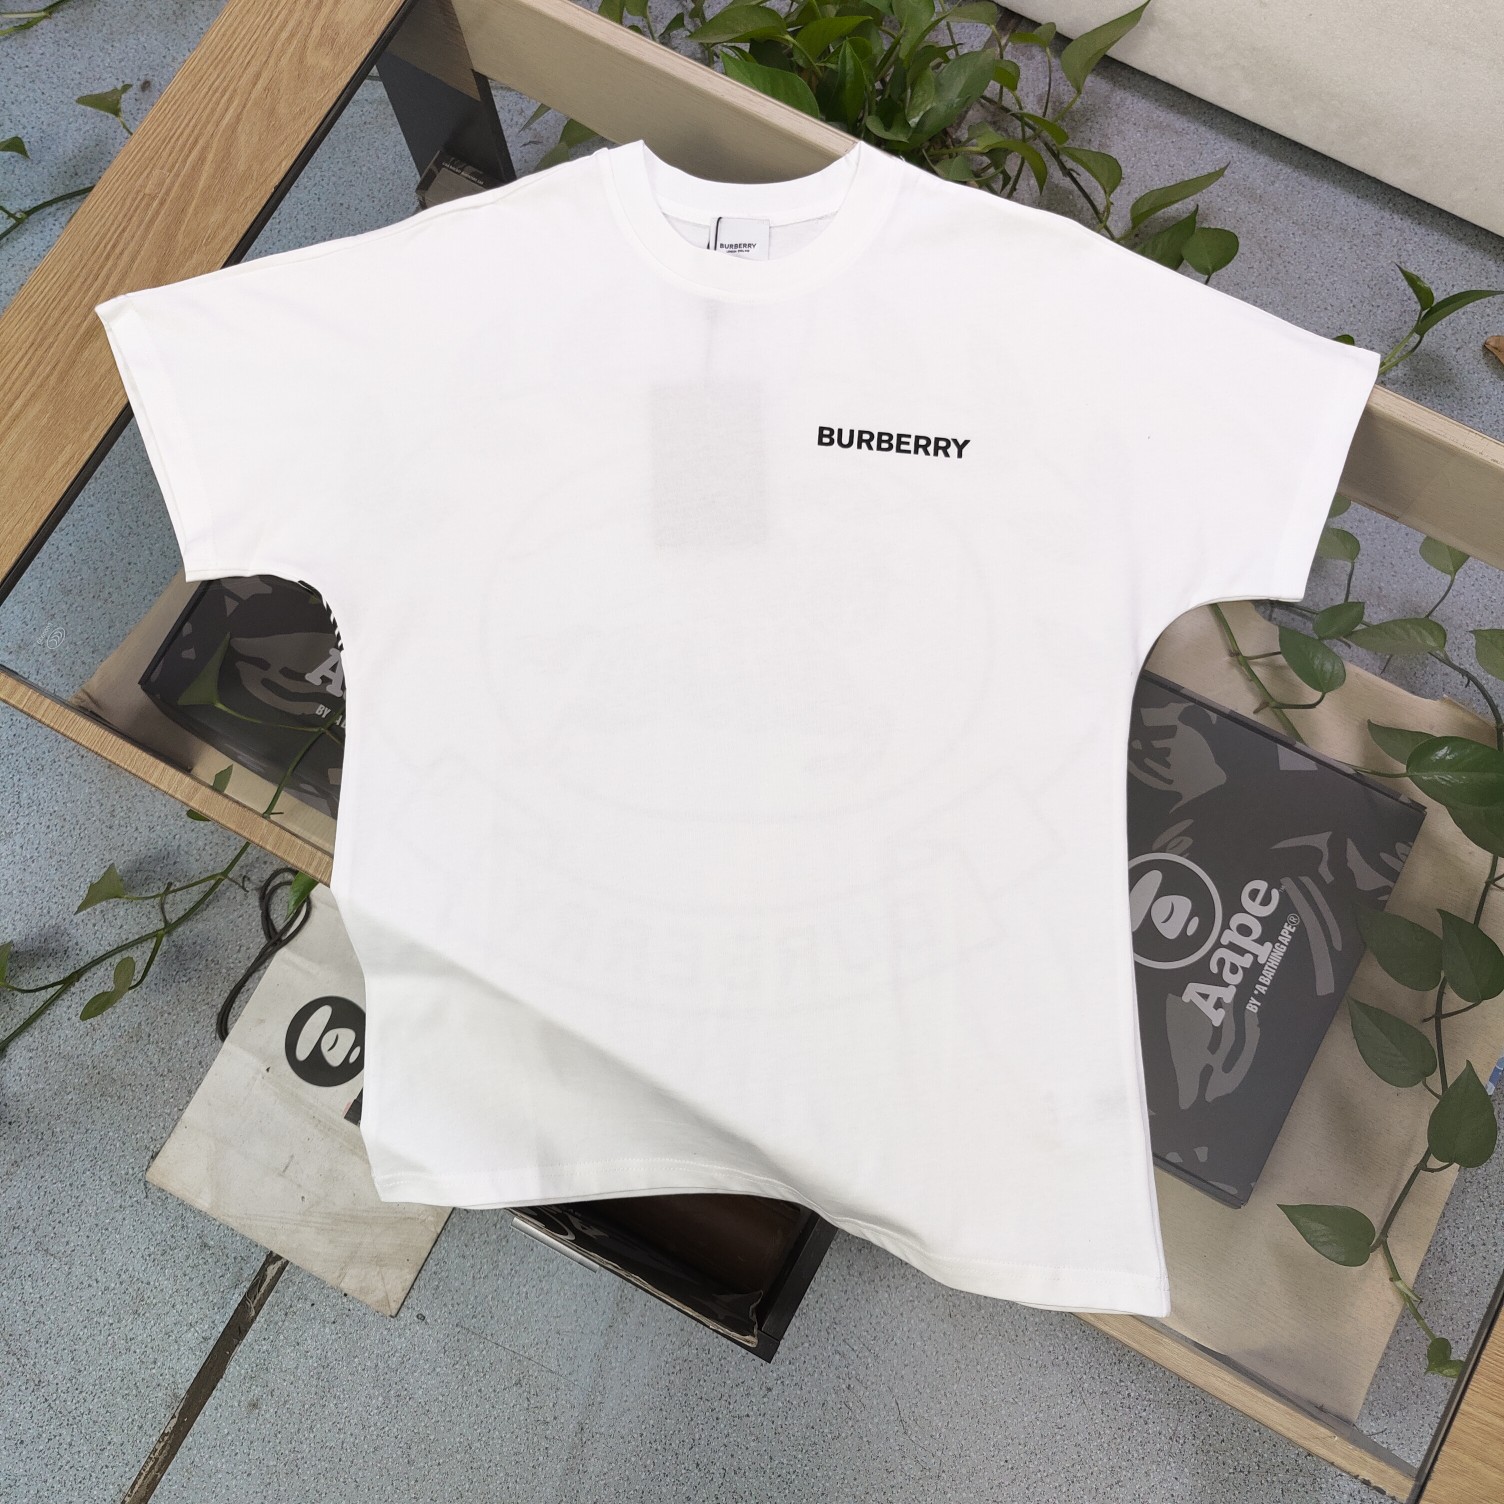 Kaufen
 Burberry Kleidung T-Shirt Gute Qualität
 Schwarz Weiß Drucken Unisex Baumwolle Kurzarm